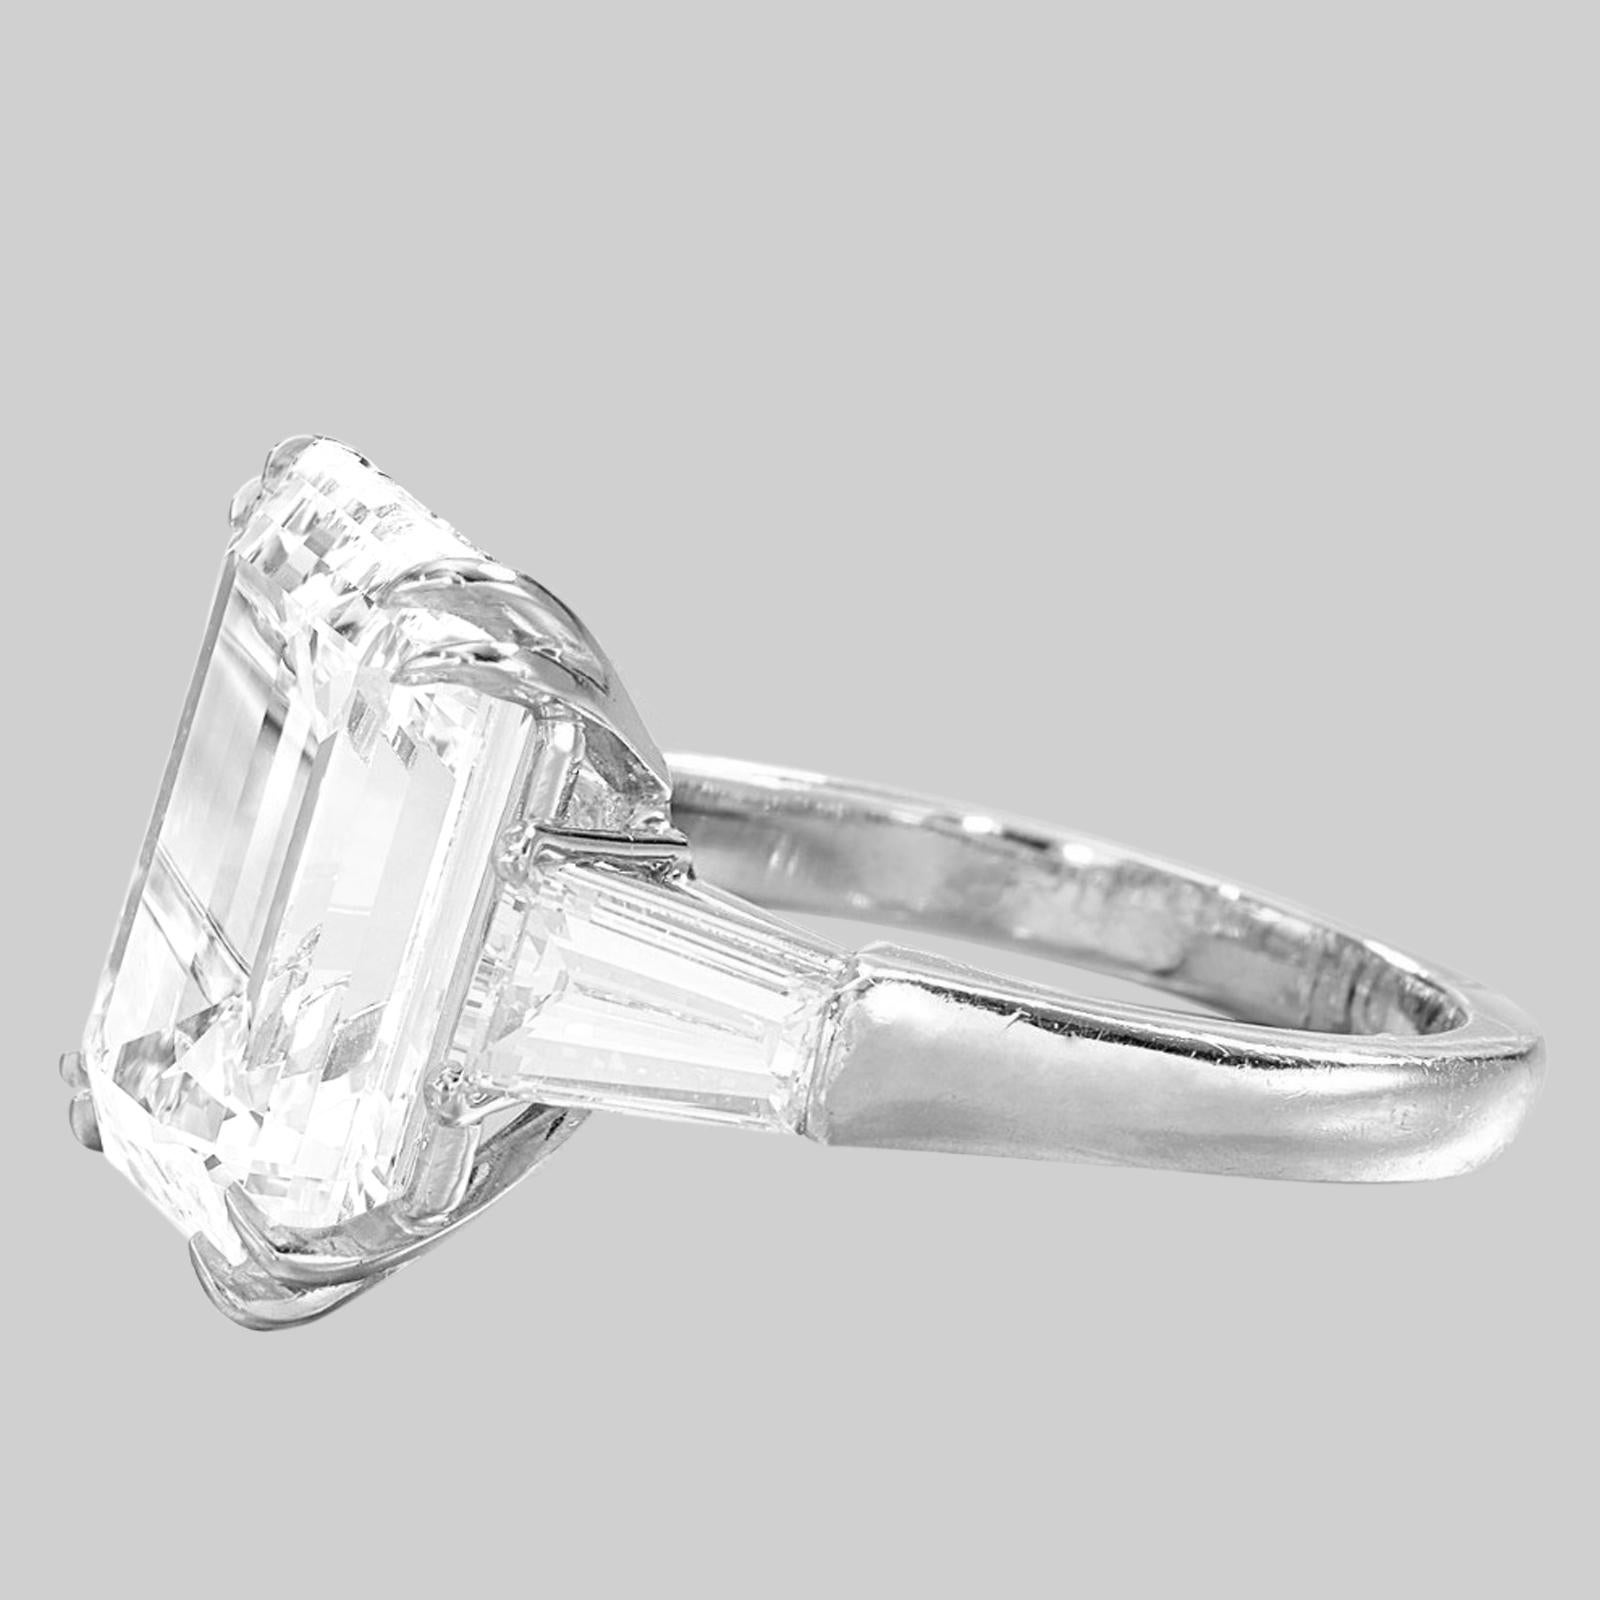 
Voici une bague exquise ornée d'un magnifique diamant taille émeraude de 10 carats, d'une clarté et d'une couleur irréprochables. Les diamants de la monture méticuleusement travaillée pèsent environ 1 carat au total. Le diamant central est certifié